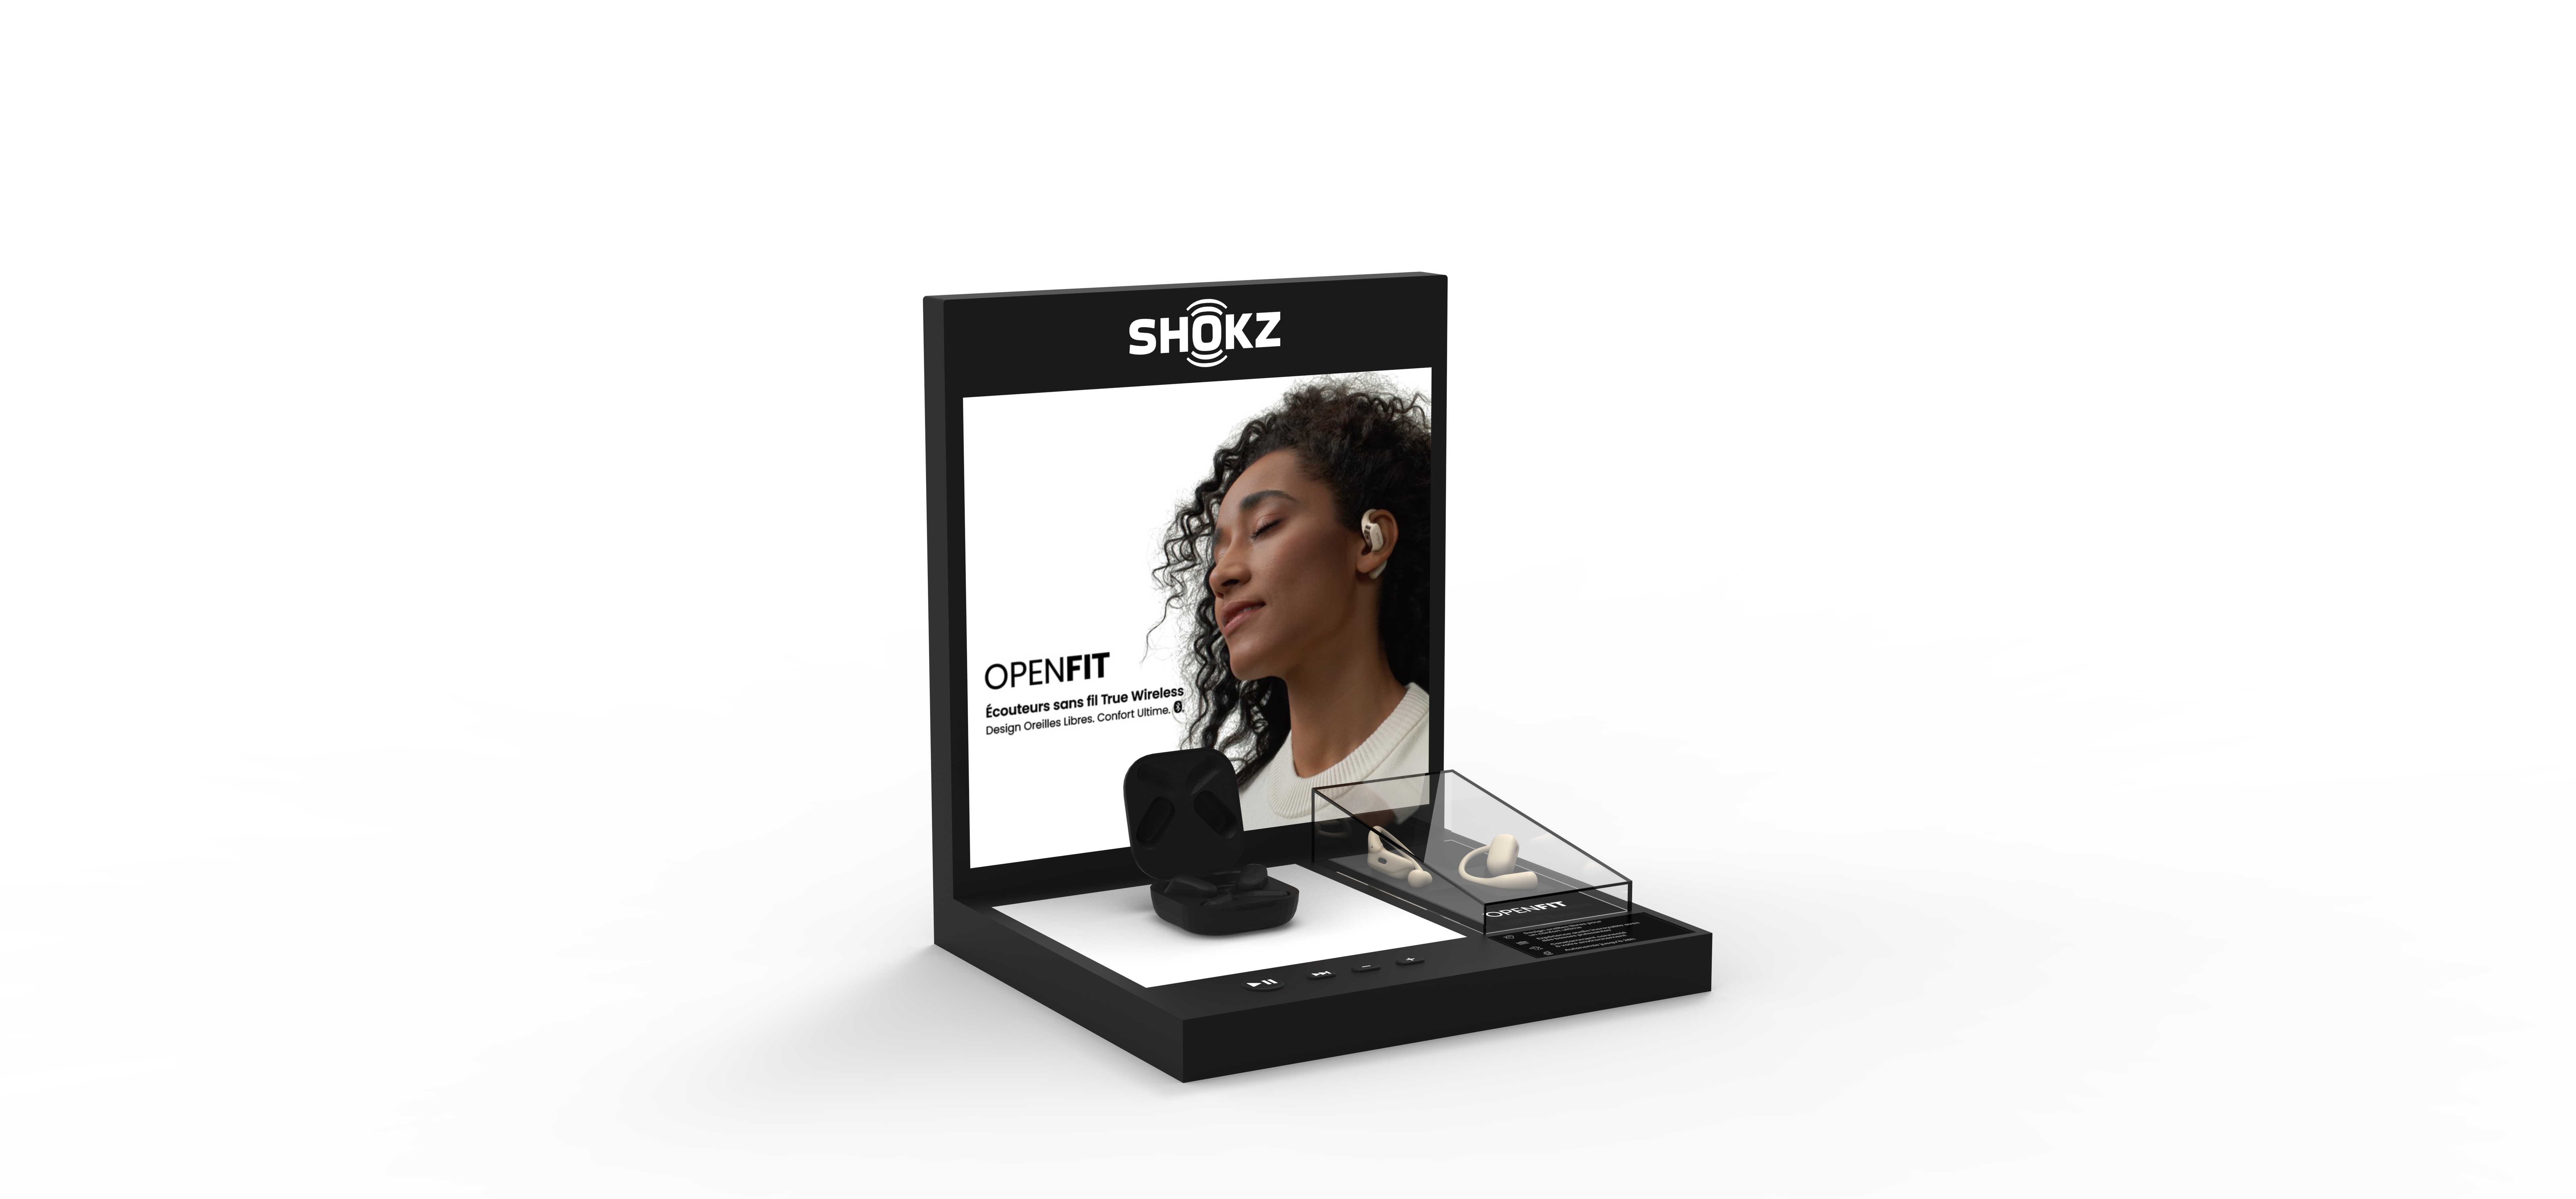 Image Shokz Tablette Standard 2.0 (OpenFit) - Francais